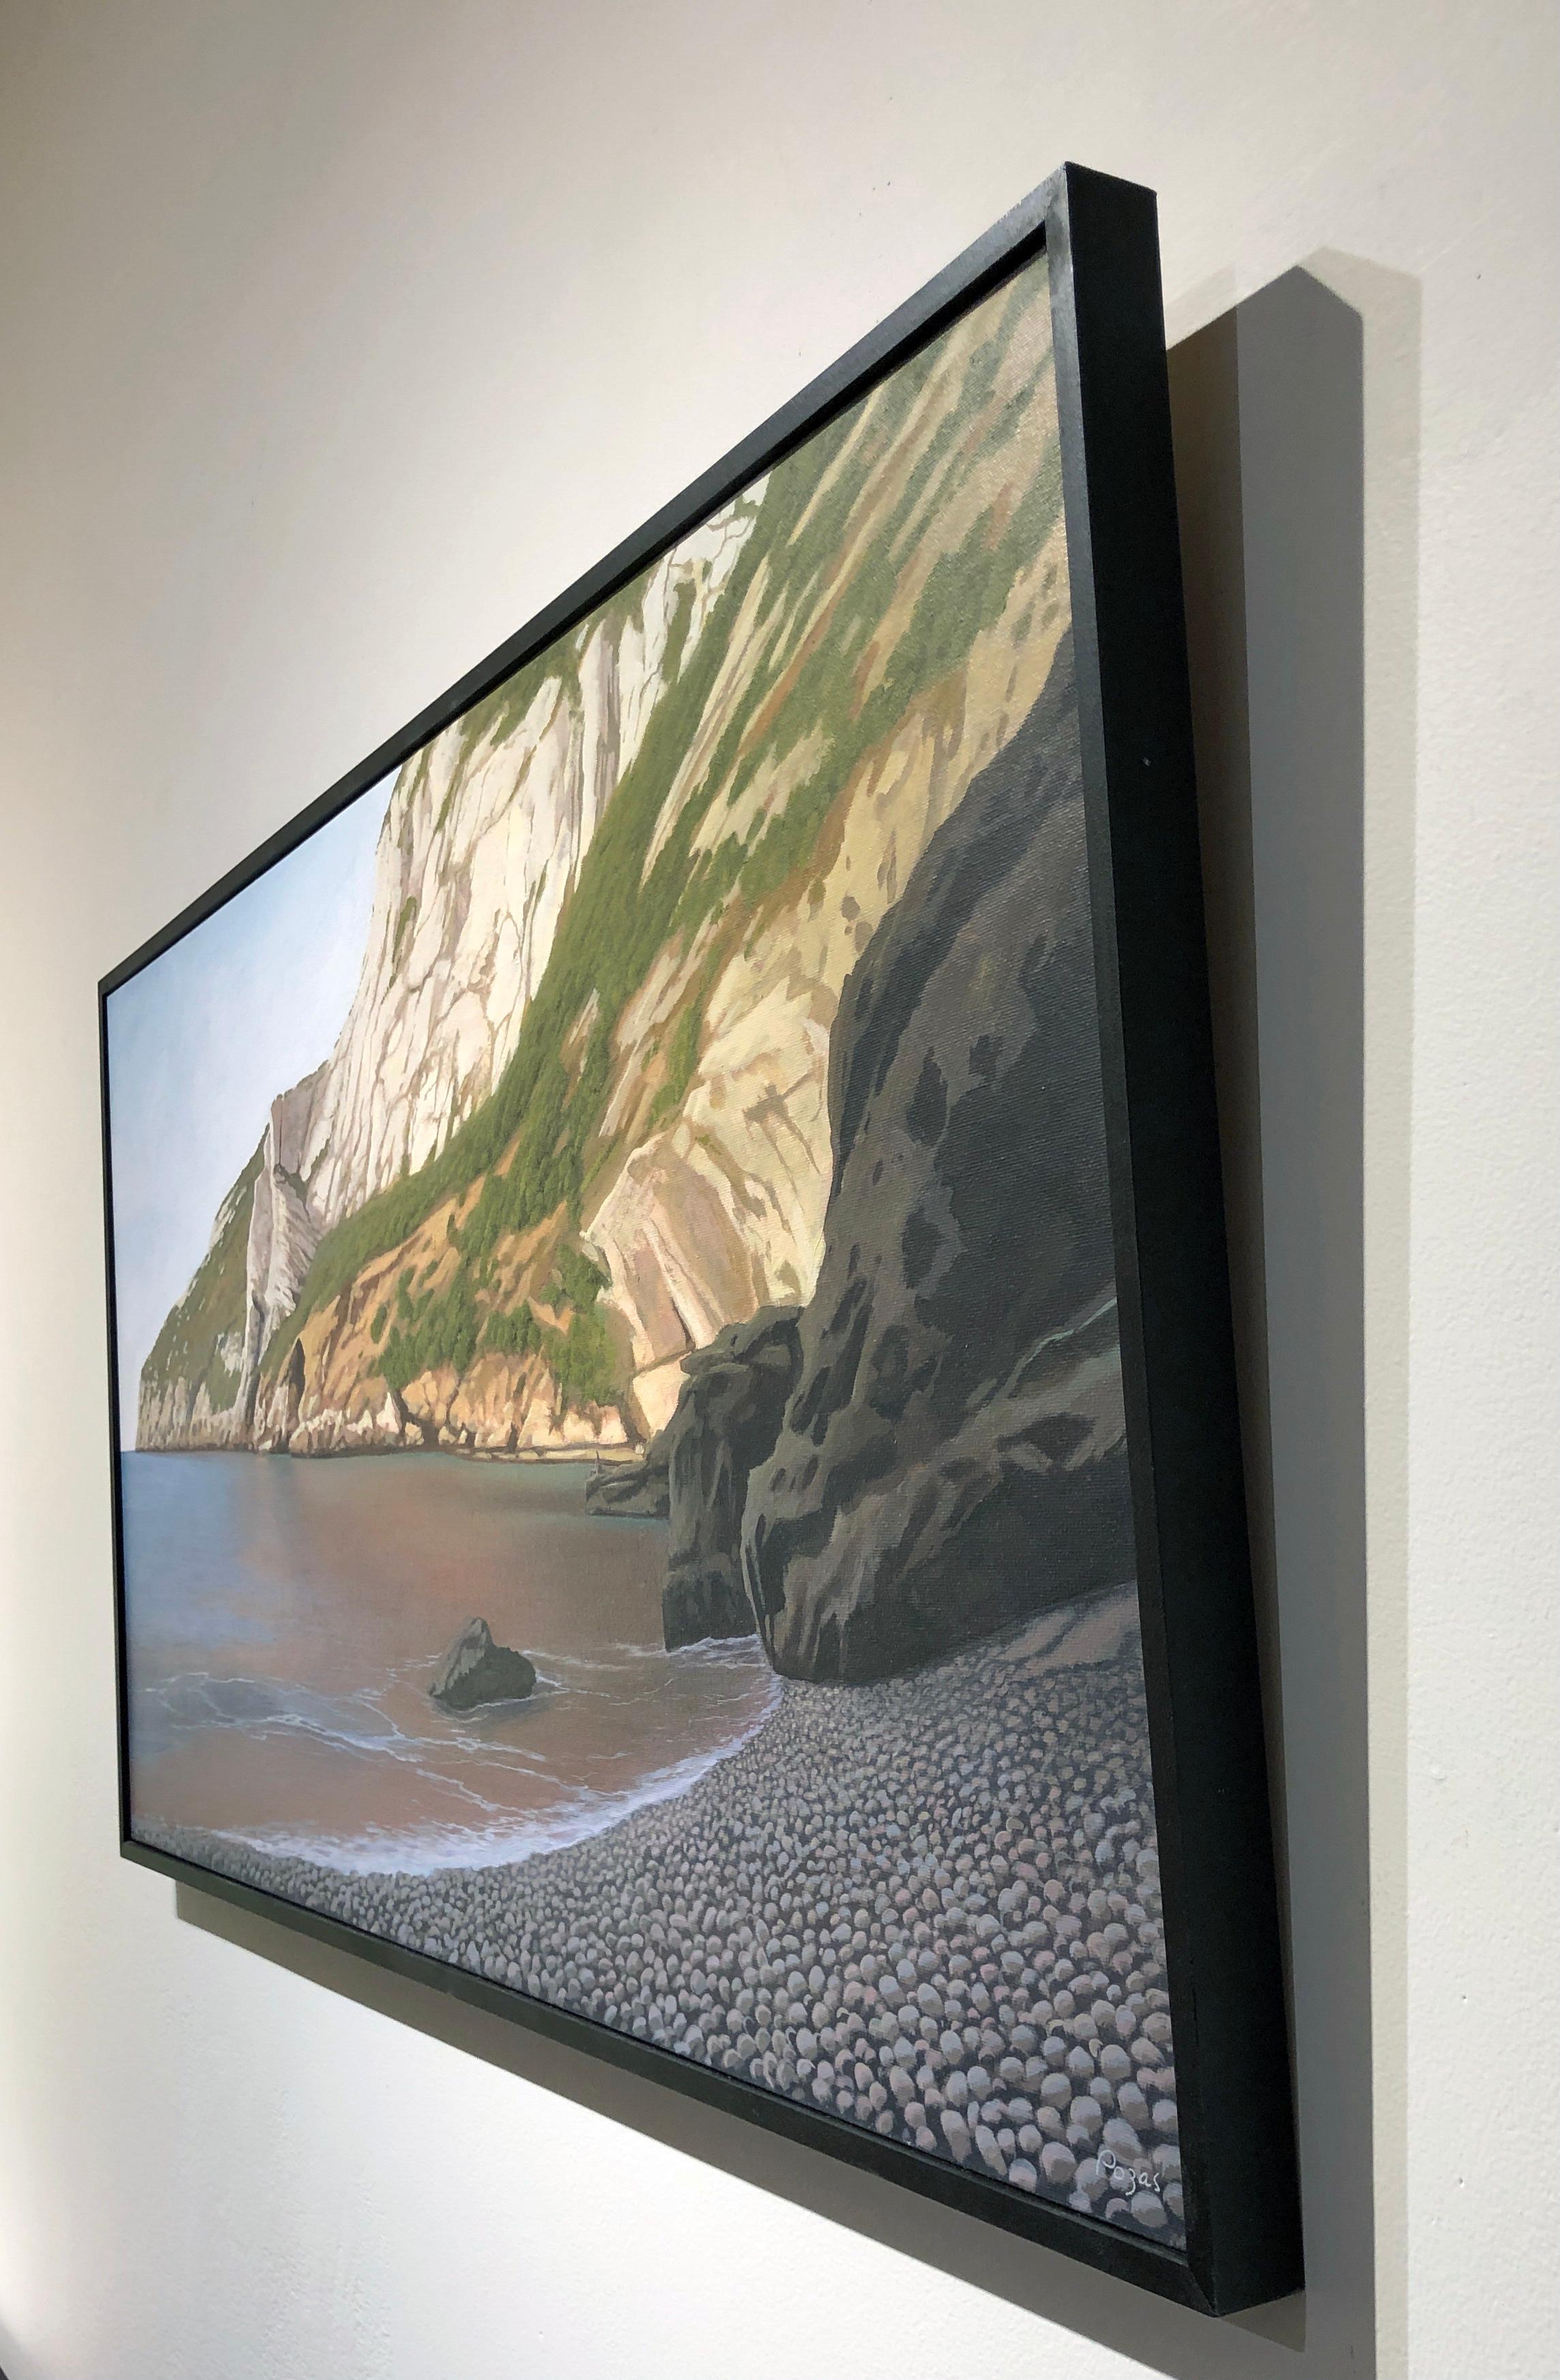  Cala Granadella, Cliffs rocheux plongant dans l'océan, paysage surréaliste détaillé - Contemporain Painting par René Monzón Relova “Pozas”